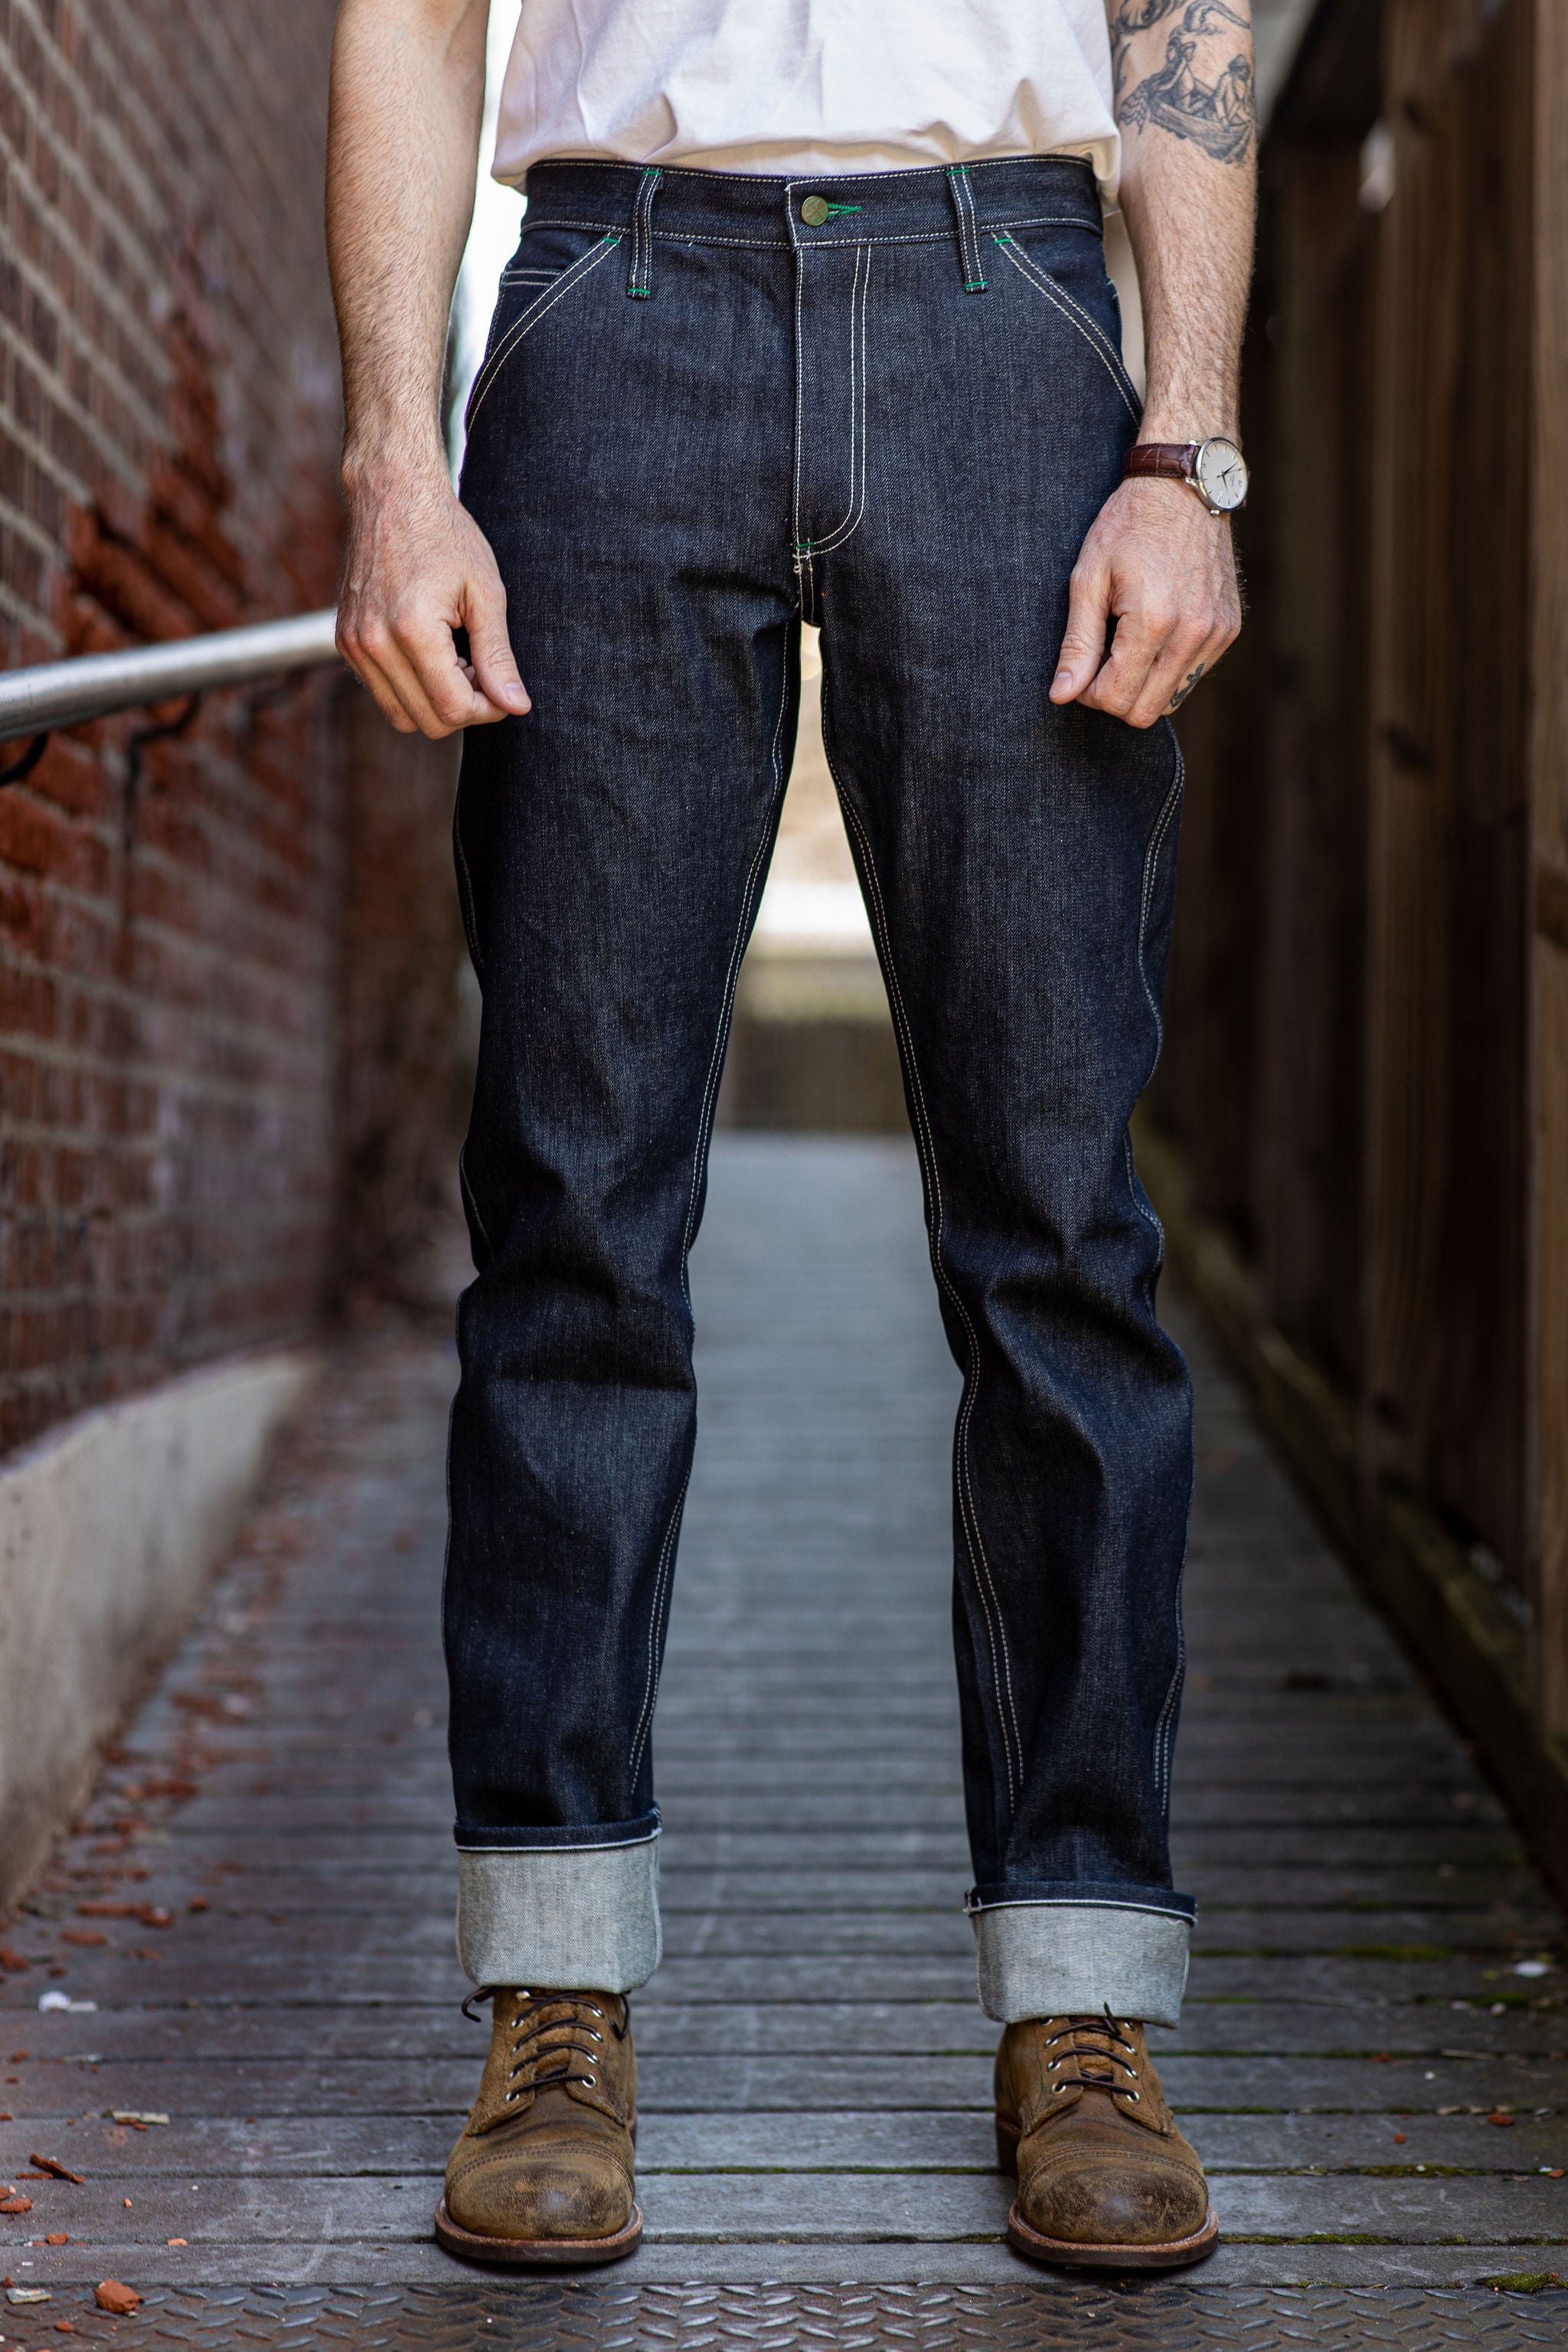 Portikus Kamin Integration left field jeans Mappe Krankheit Bolzen